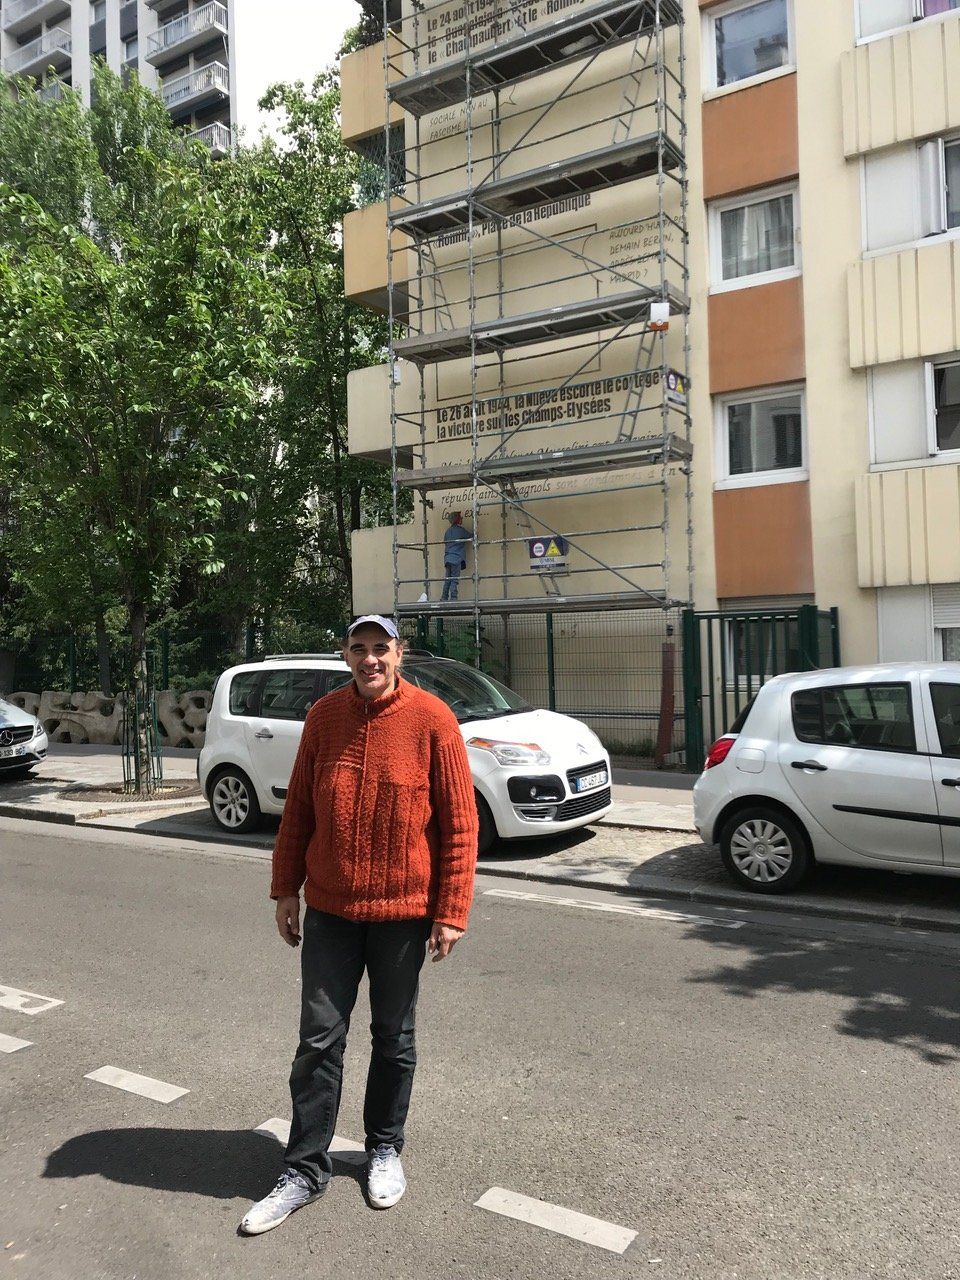 Juan à la rue, 24 mai 2019